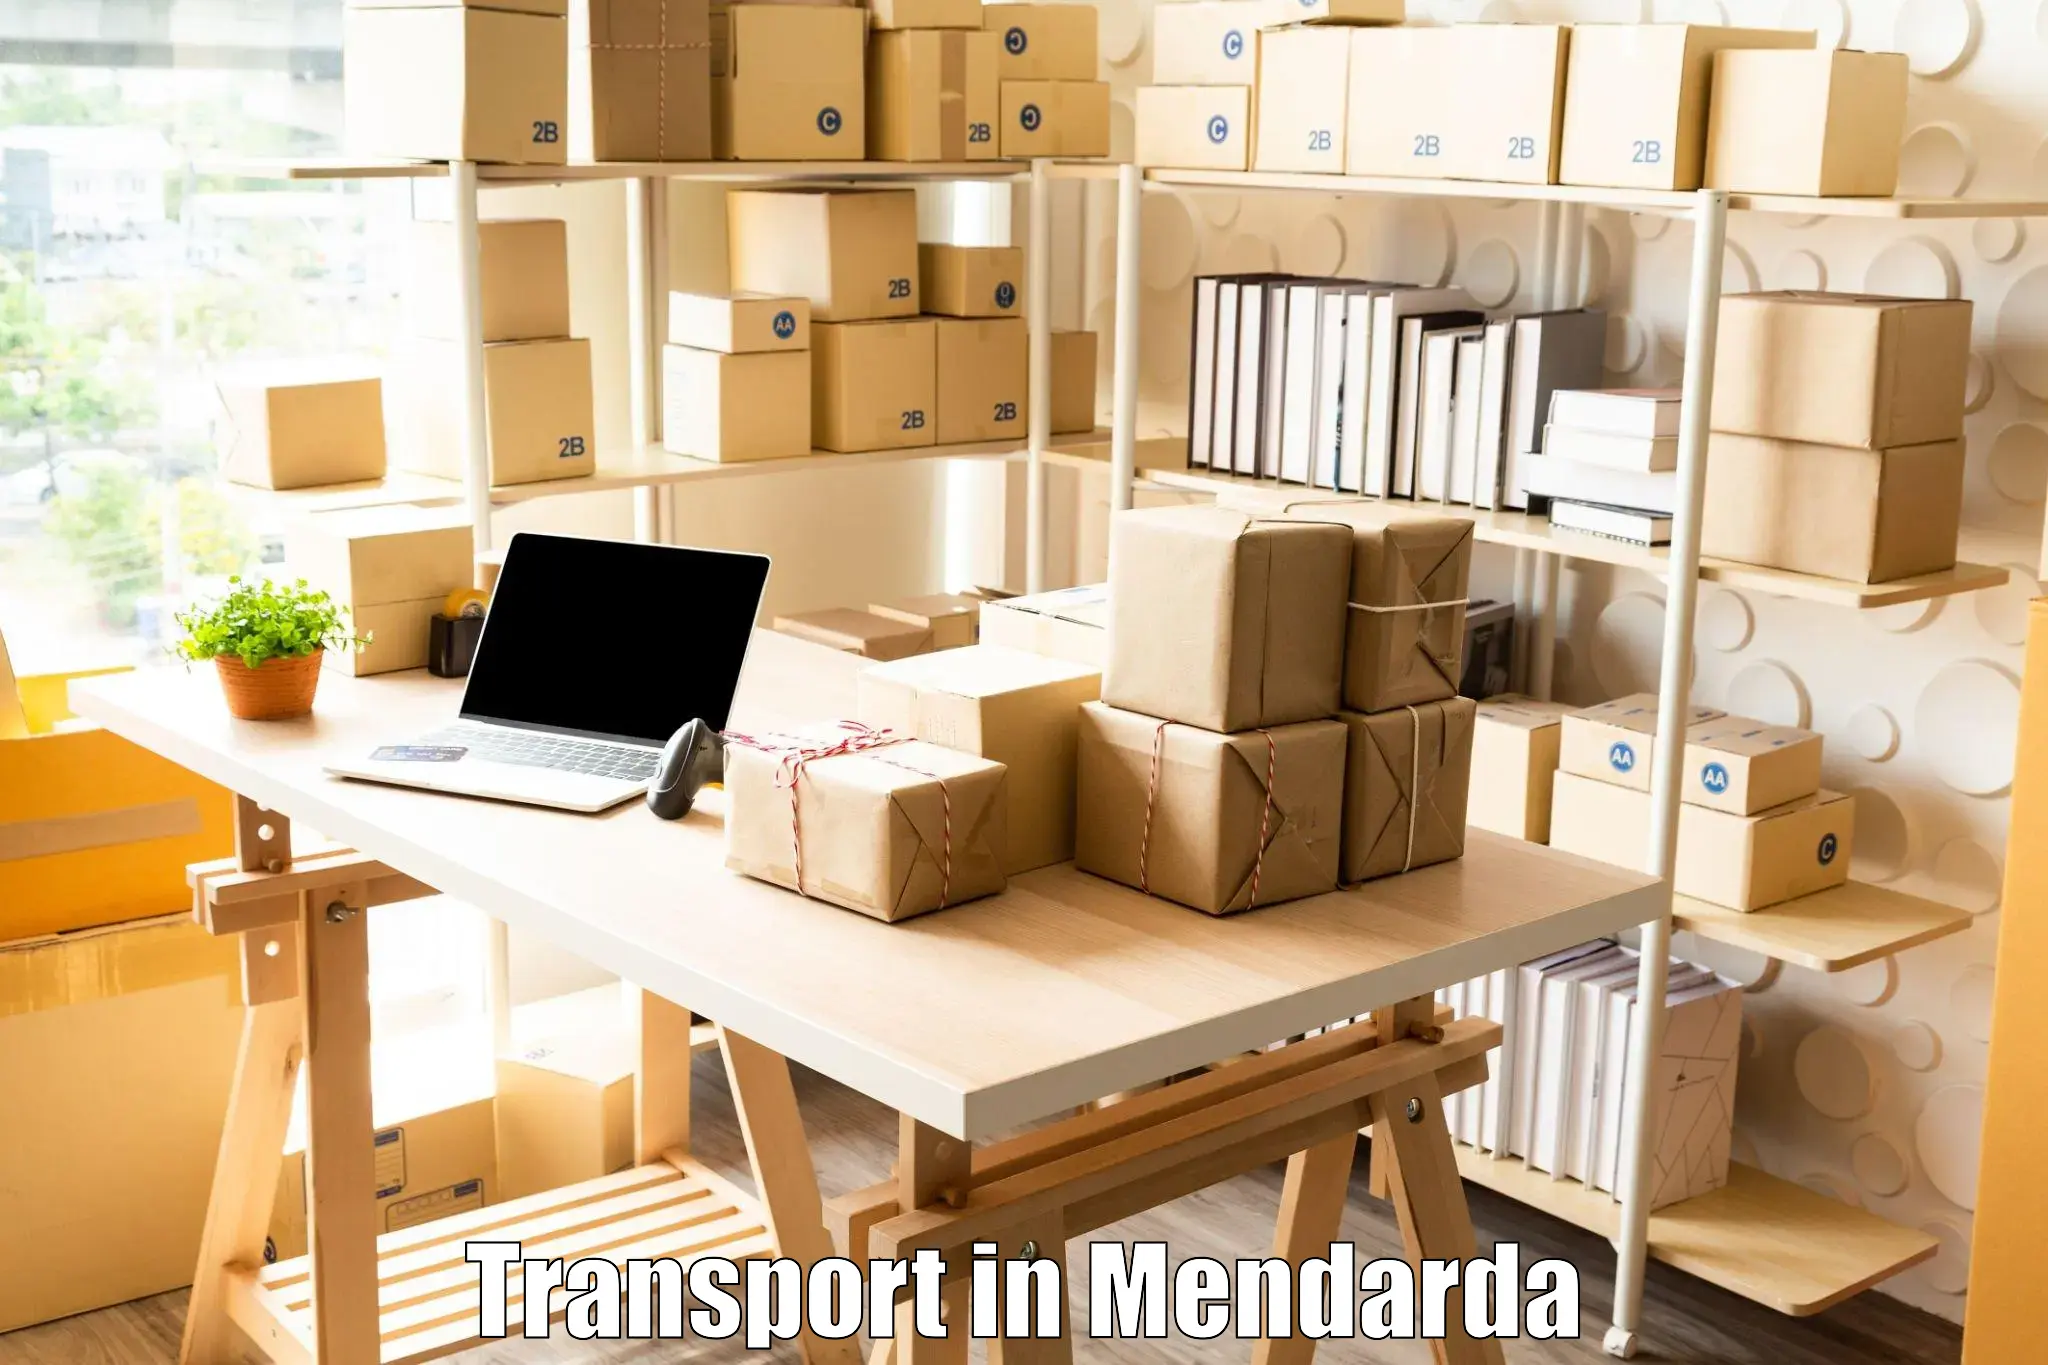 Transport in sharing in Mendarda